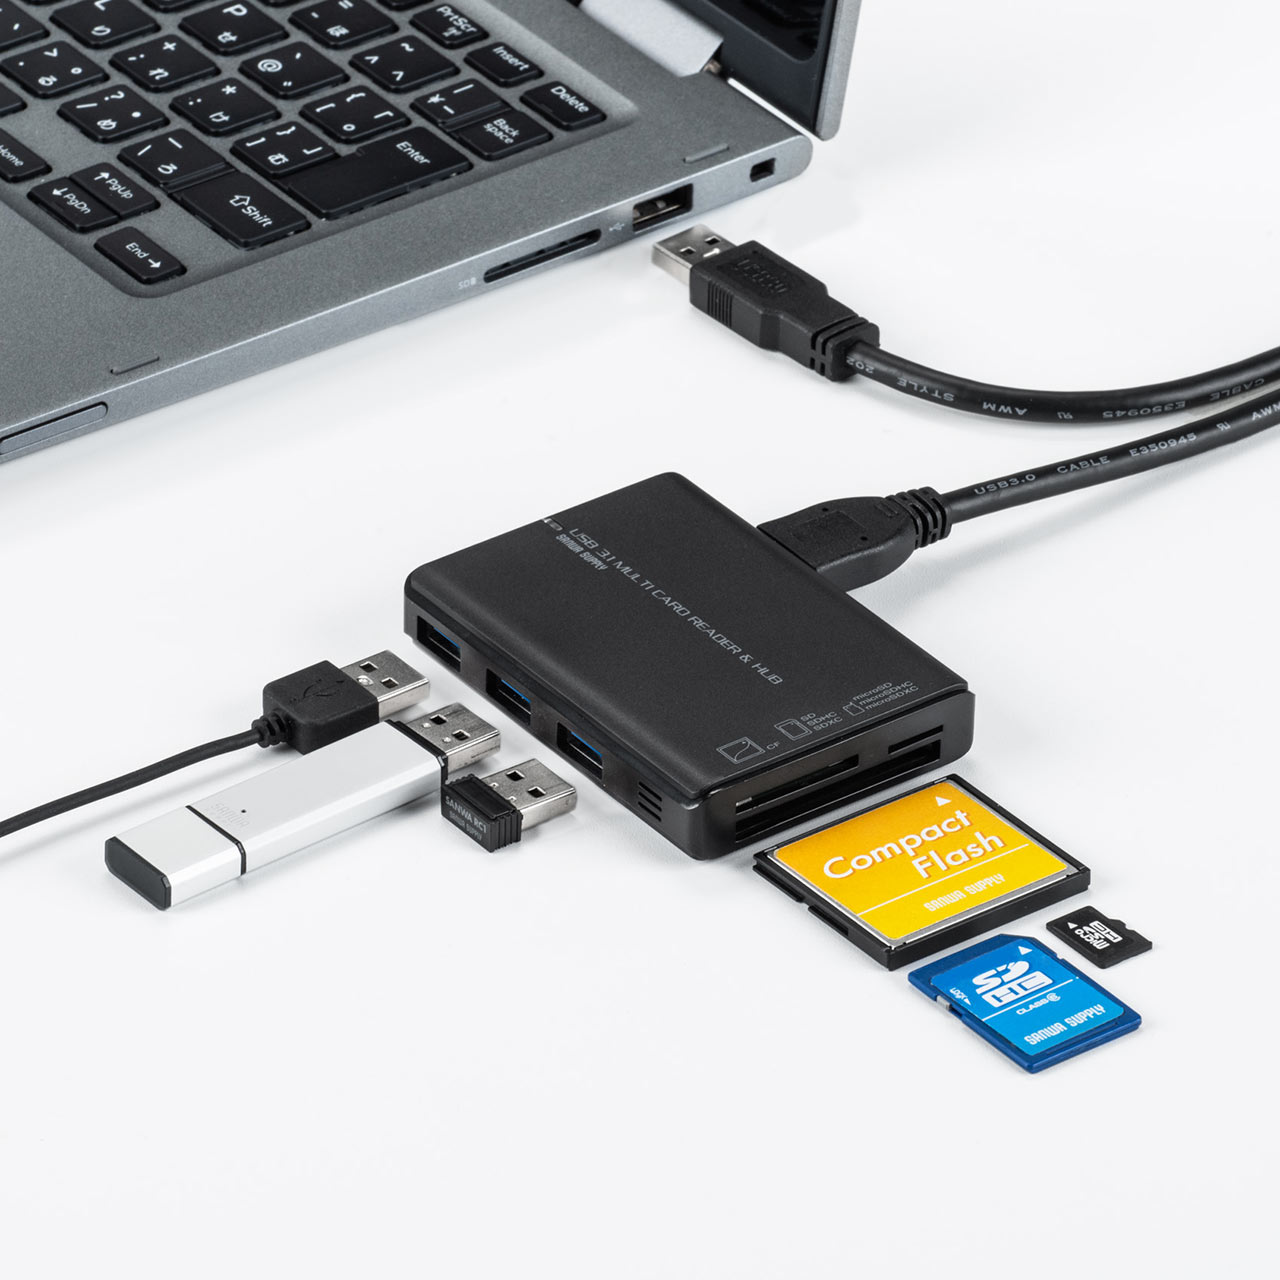 USBハブ付きカードリーダー（SDカード・microSDカード・コンパクト